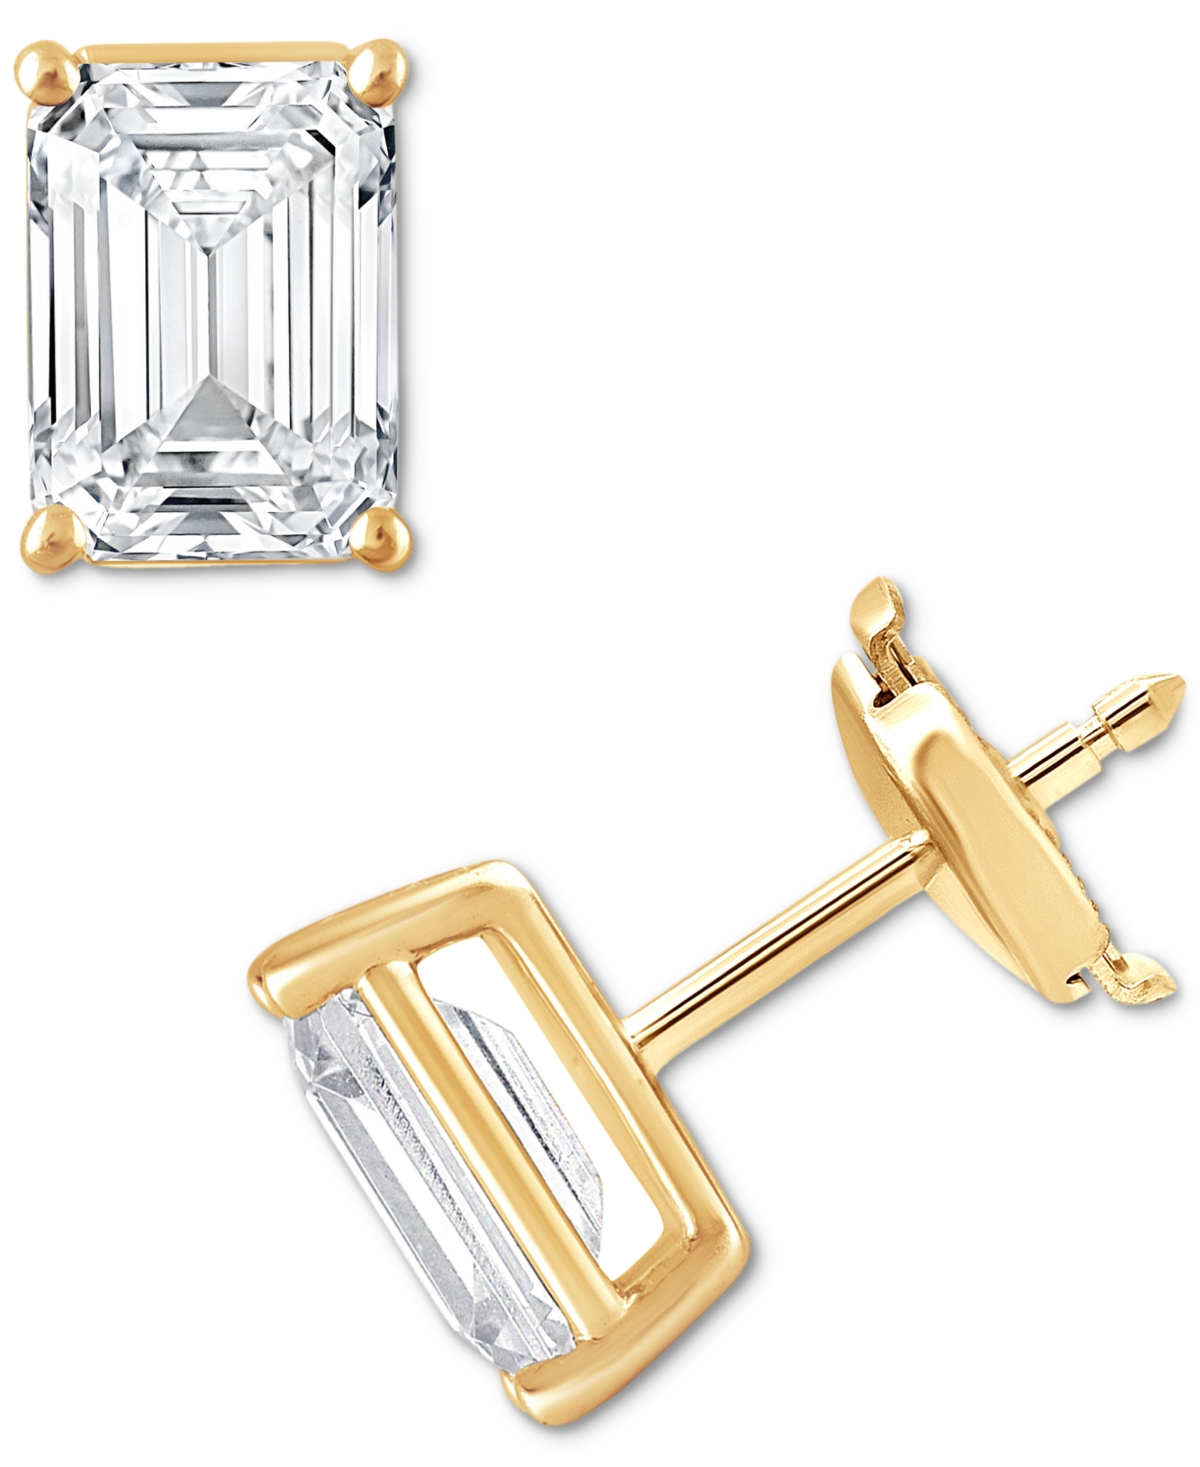 Certified Lab Grown Diamond Emerald-Cut Stud Earrings (3 ct. t.w.) in 14k Gold - Yellow Gold